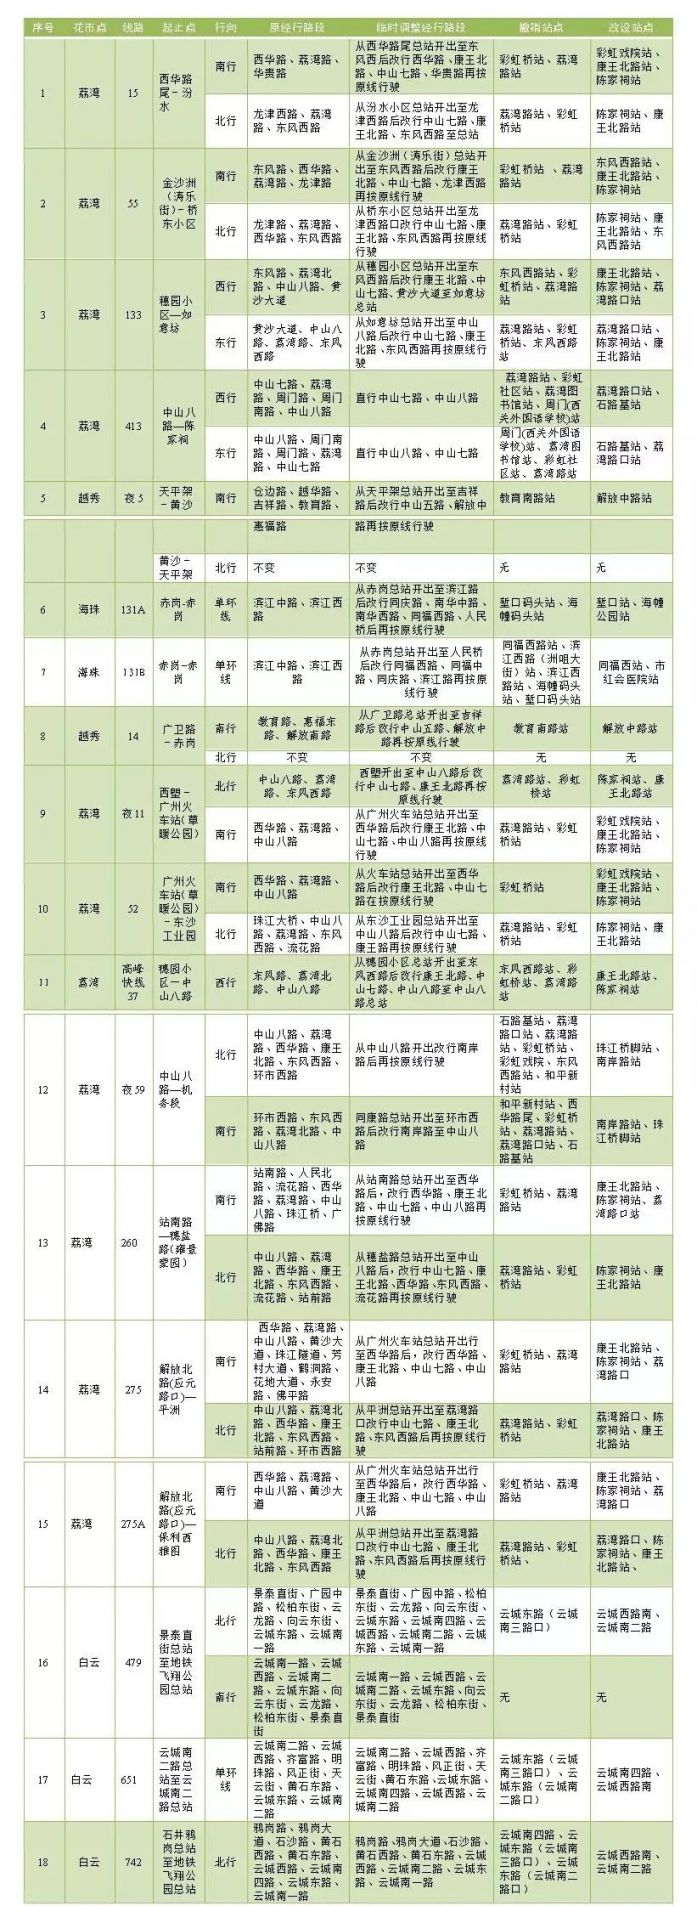 2020广州迎春花市期间公交调整表一览